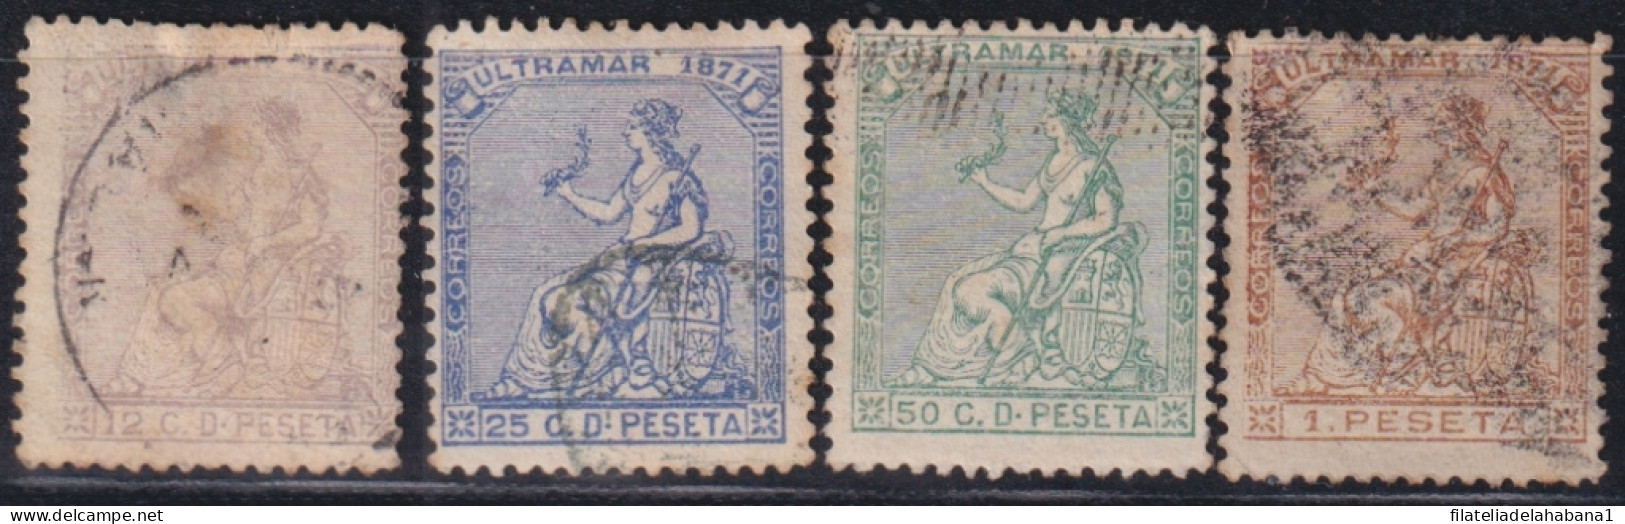 1871-136 CUBA ANTILLES SPAIN 1871 COMPLETE SET USED.  - Préphilatélie